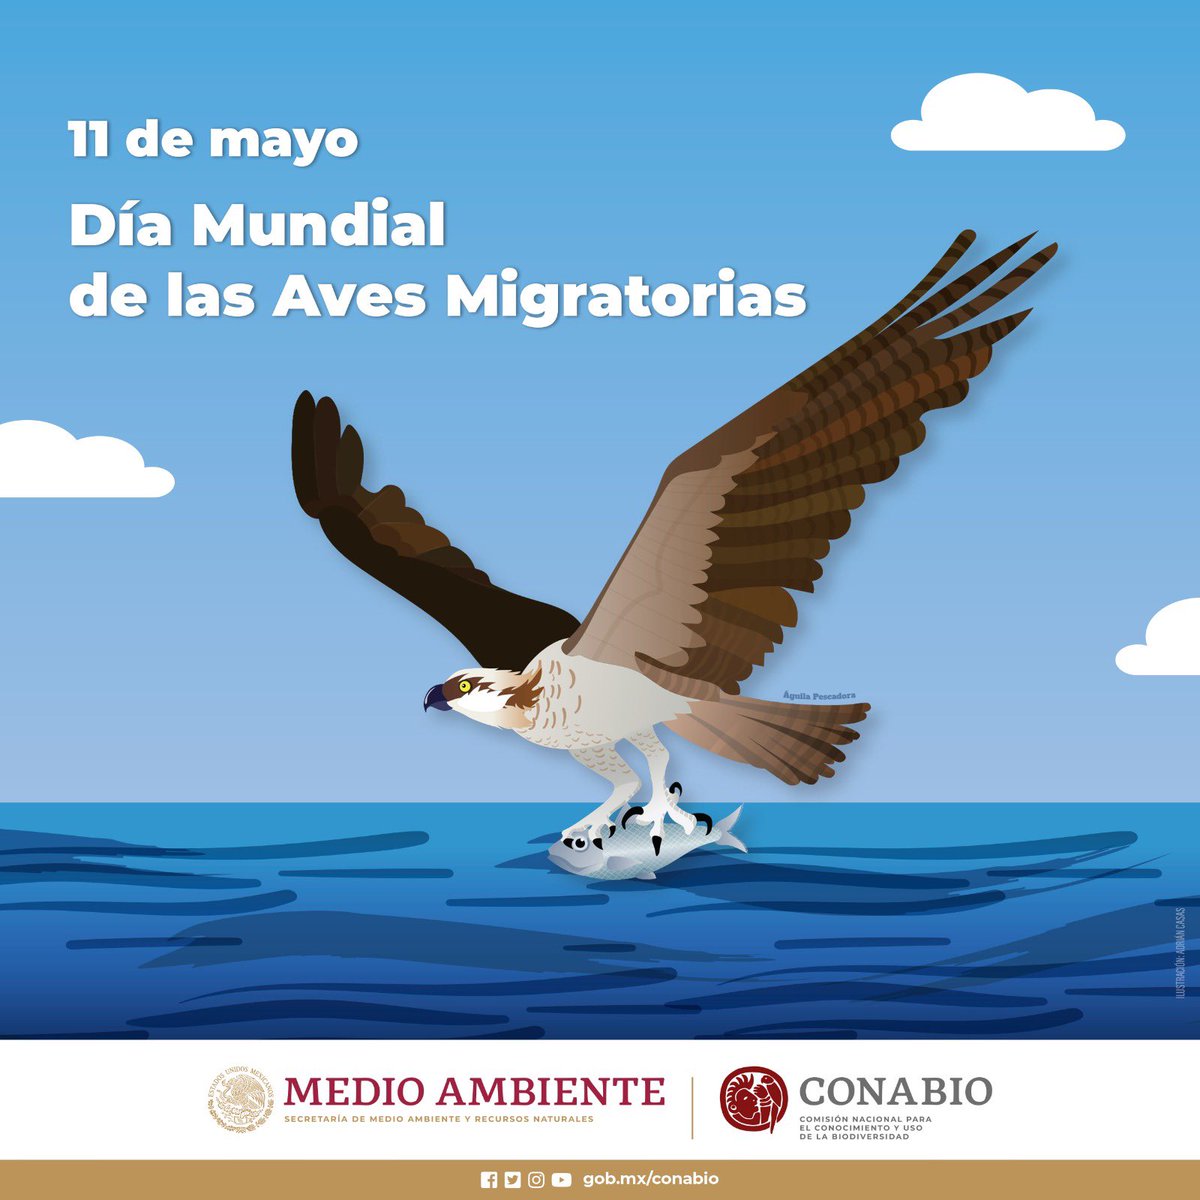 🪶Día Mundial de las Aves Migratorias 🪶 Este día nos recuerda la importancia de proteger las rutas migratorias de nuestras aves, que viajan miles de kilómetros cada año. ¿Qué aves migratorias has visto últimamente?#DíaMundialDeLasAvesMigratorias